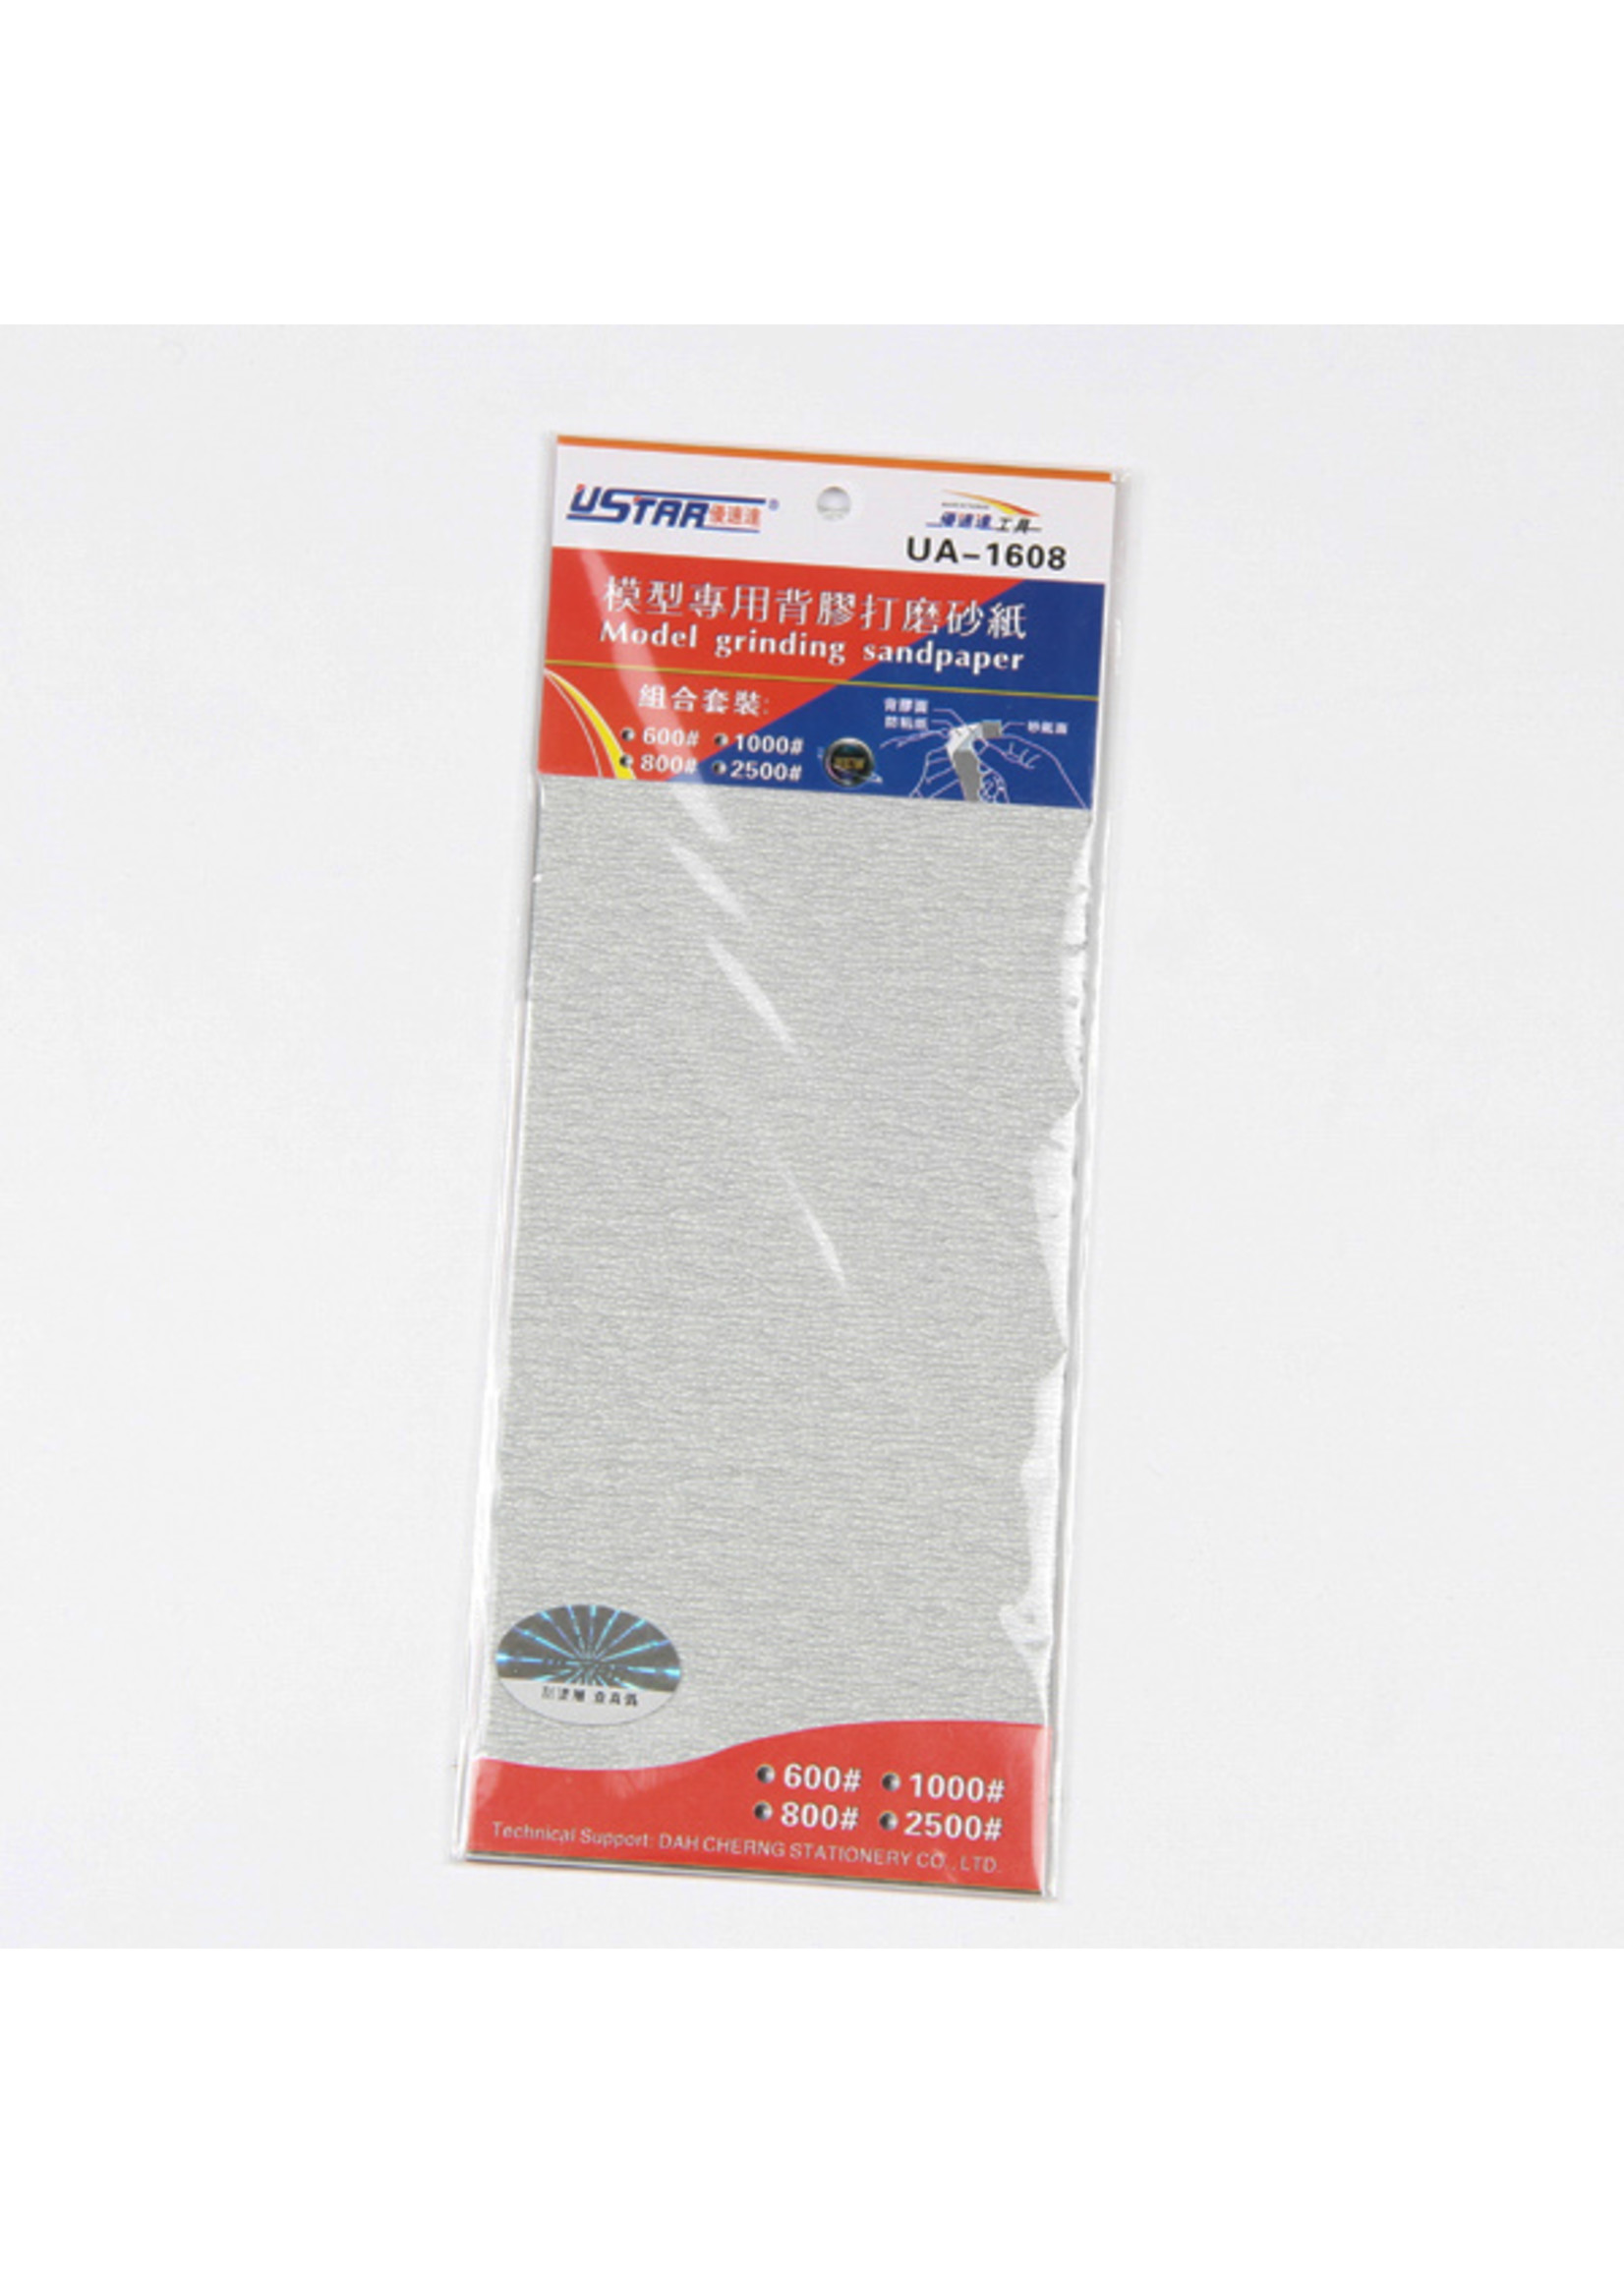 Ustar U-STAR Abrasive Paper Kit 4in1